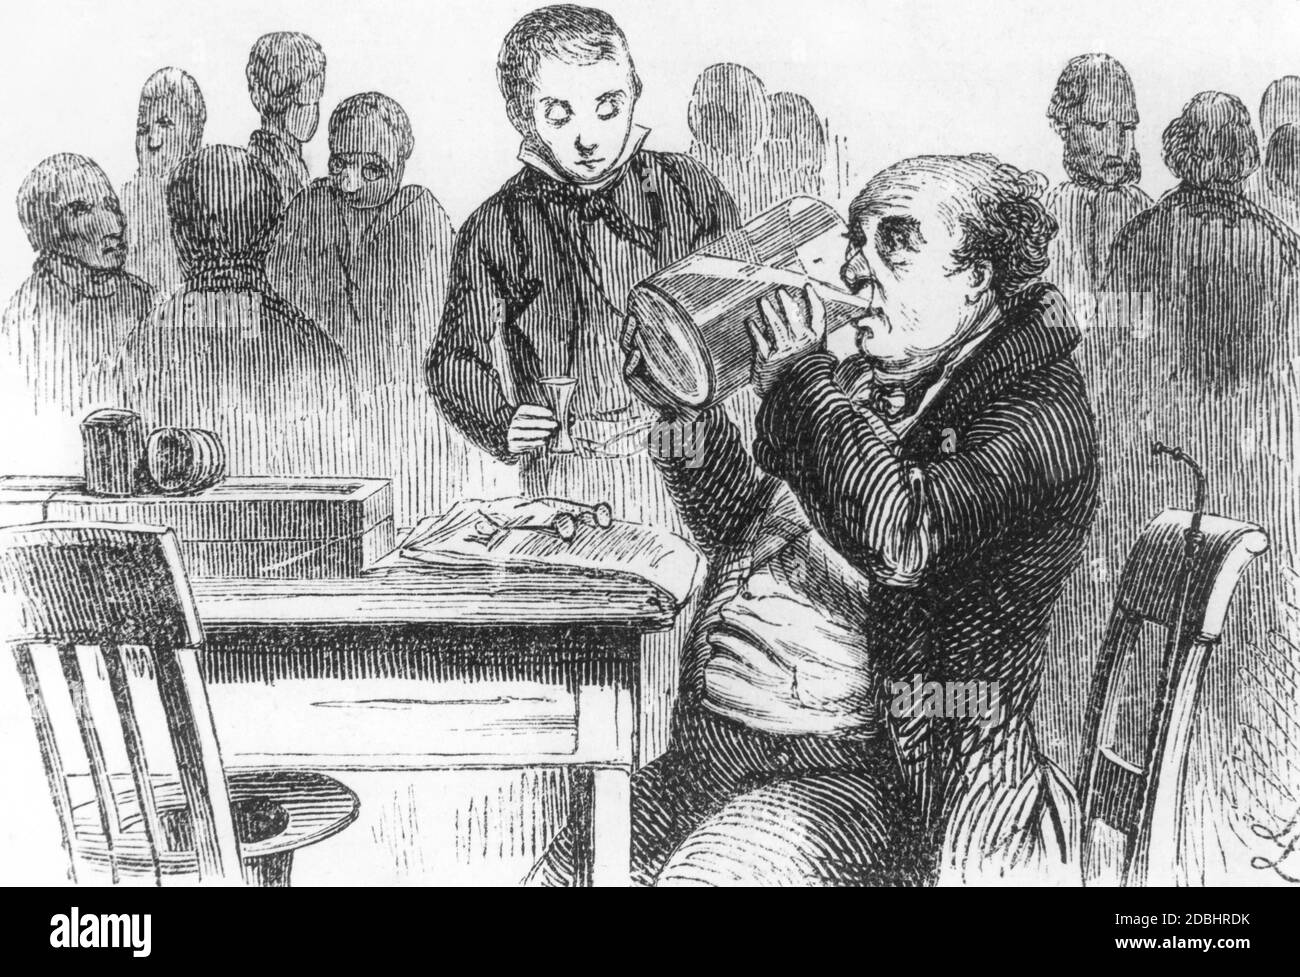 Ce dessin de la première moitié du XIXe siècle montre un homme plus âgé dans un pub berlinois buvant dans une grande carafe. Banque D'Images